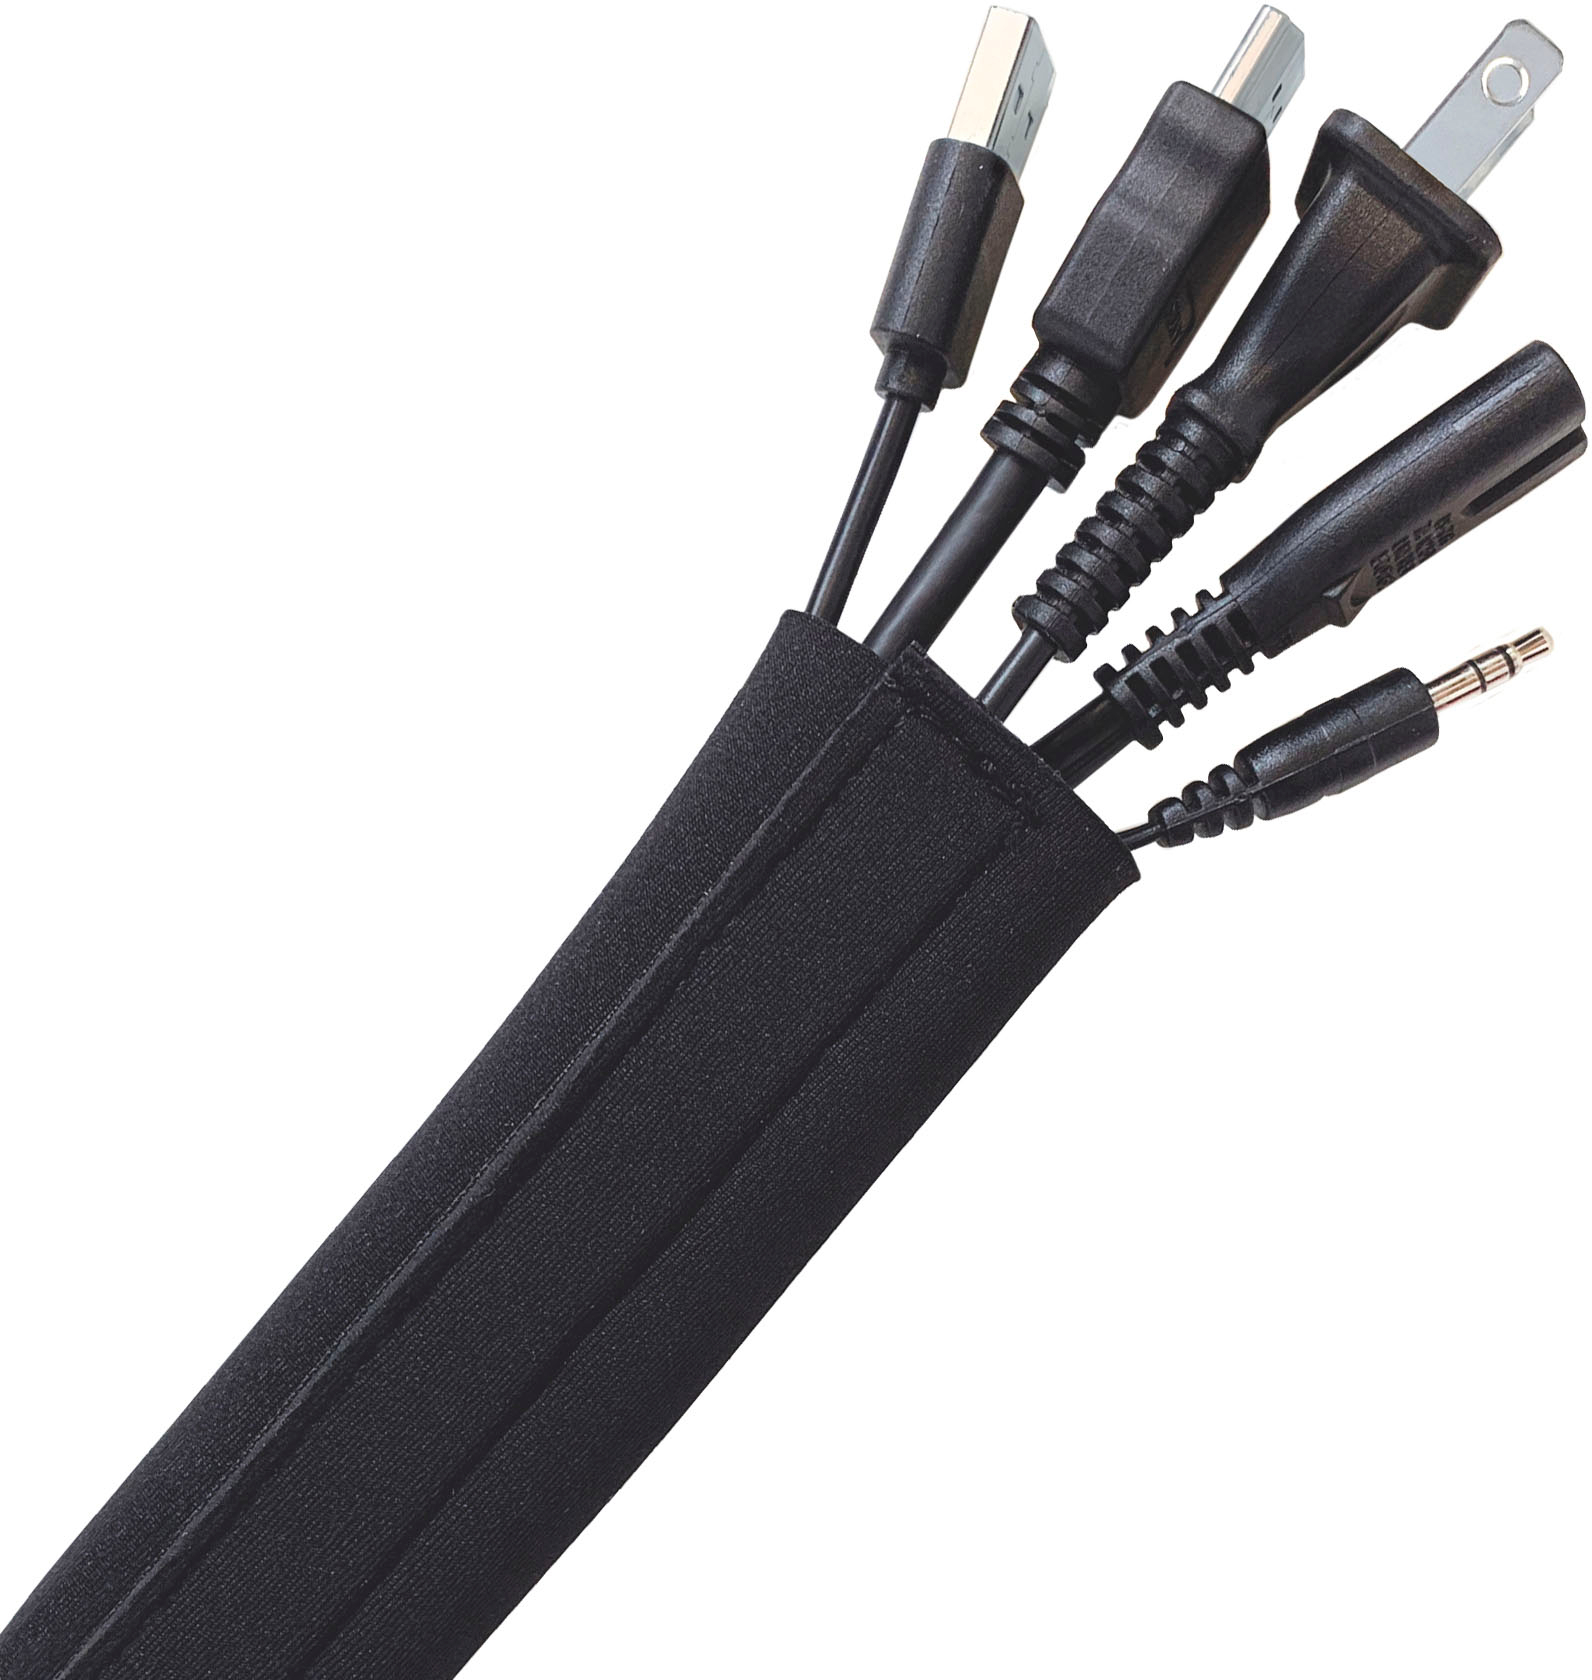 4pcs Cable Management Sleeve(50cm/19.68, Black)